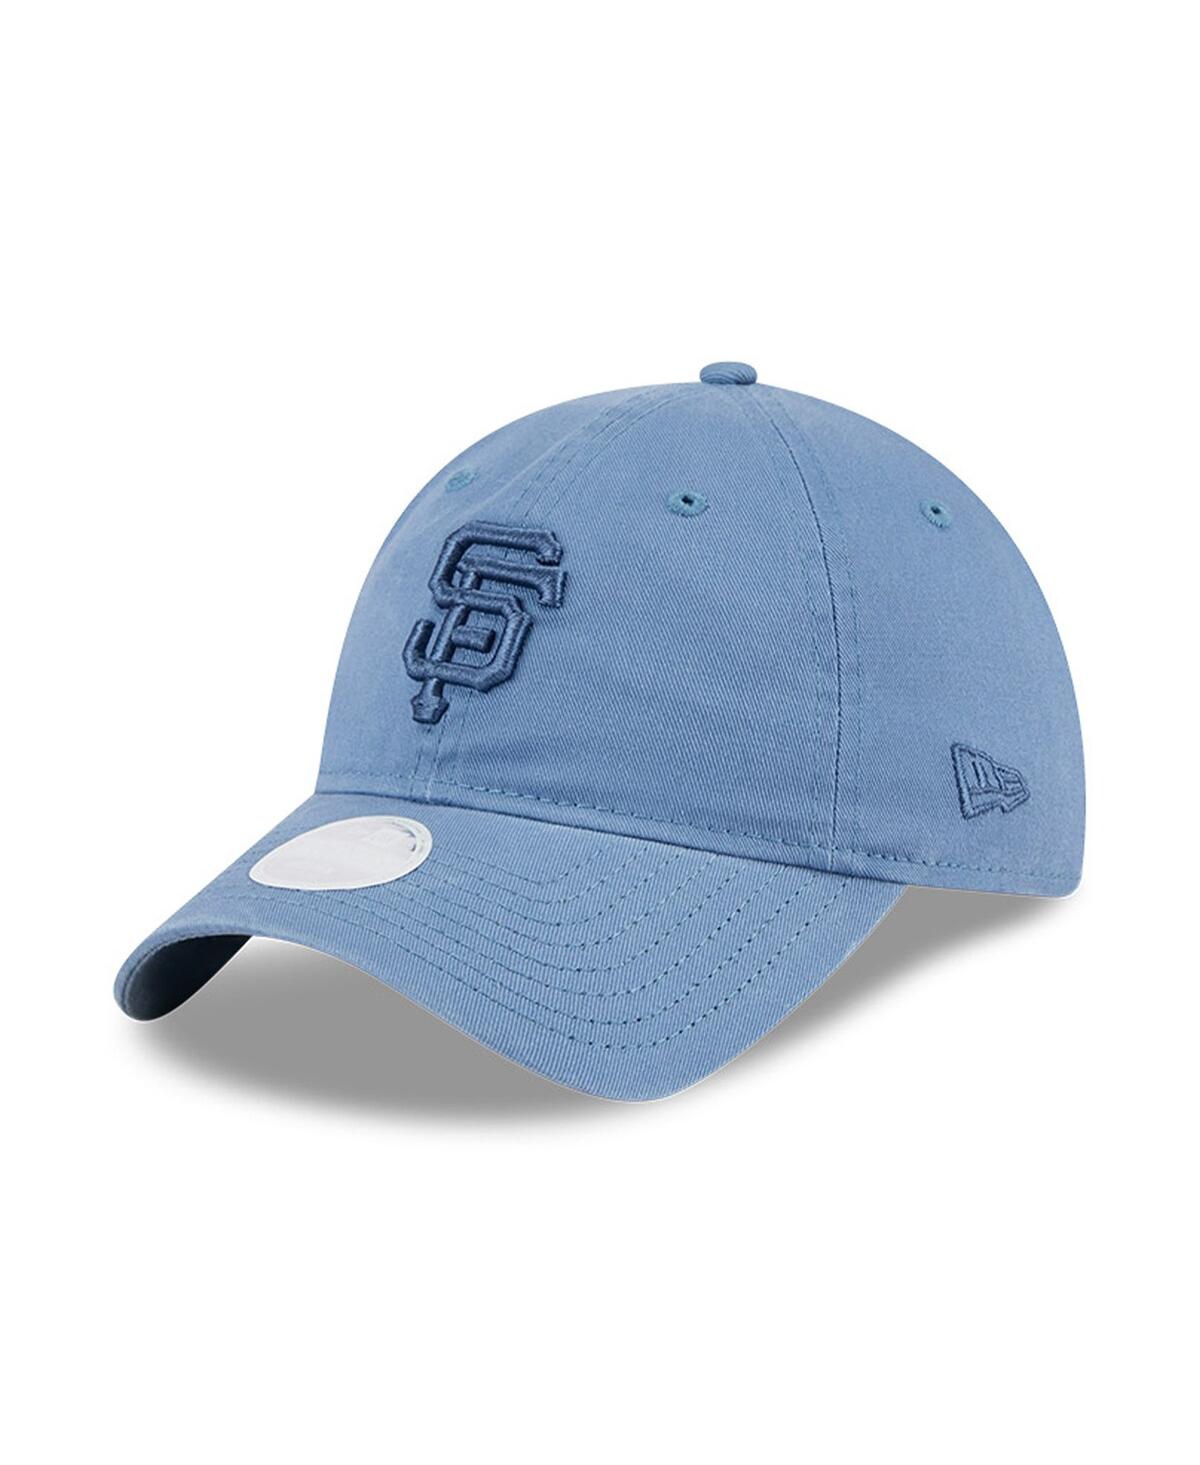 Women's San Francisco Giants Faded Blue 9Twenty Adjustable Hat - Blue